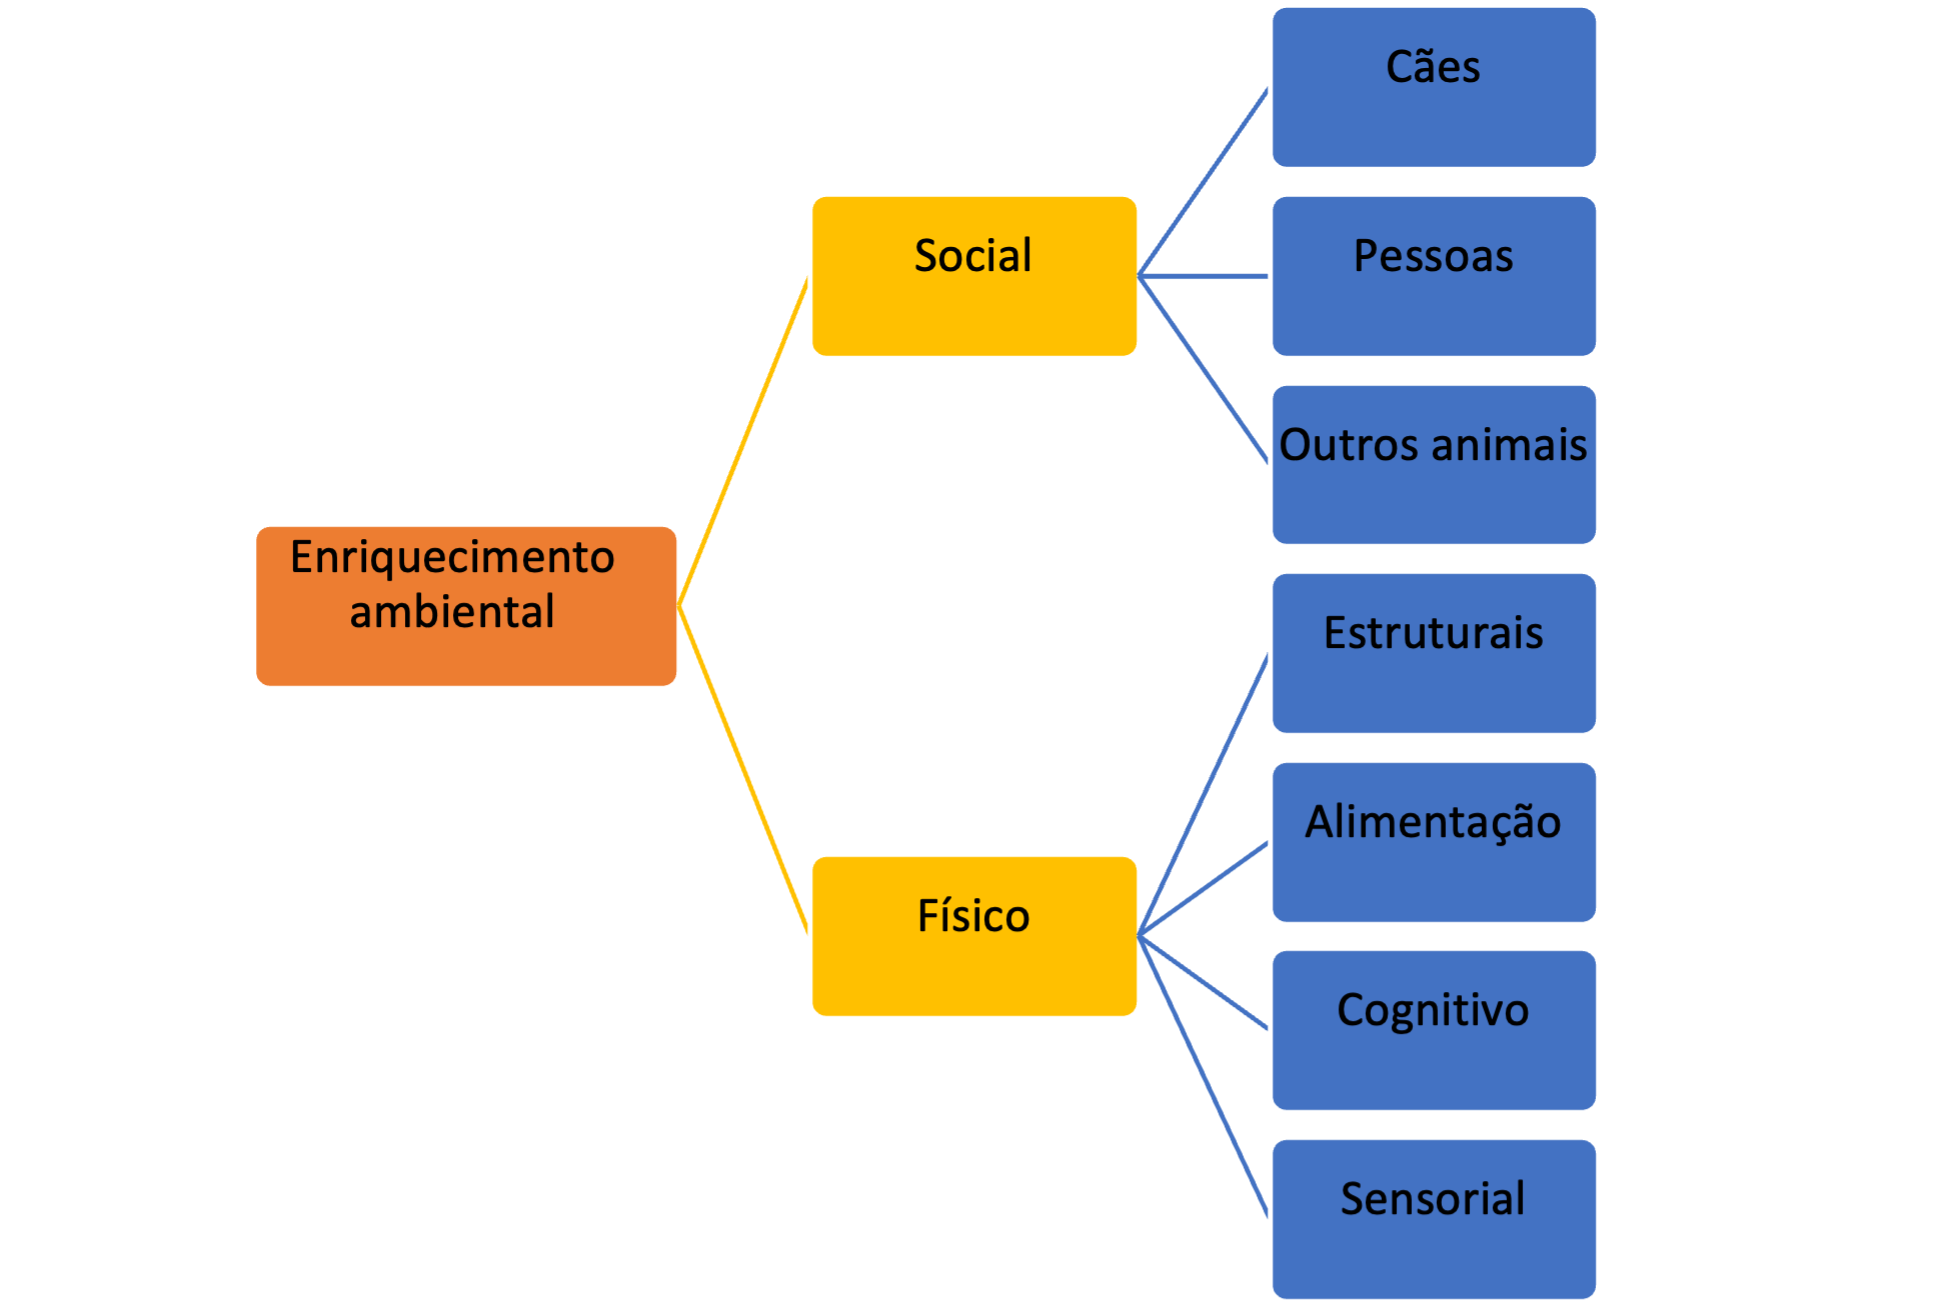 : Diagrama que demonstra os diferentes tipos de enriquecimento ambiental para o bem-estar dos cães.